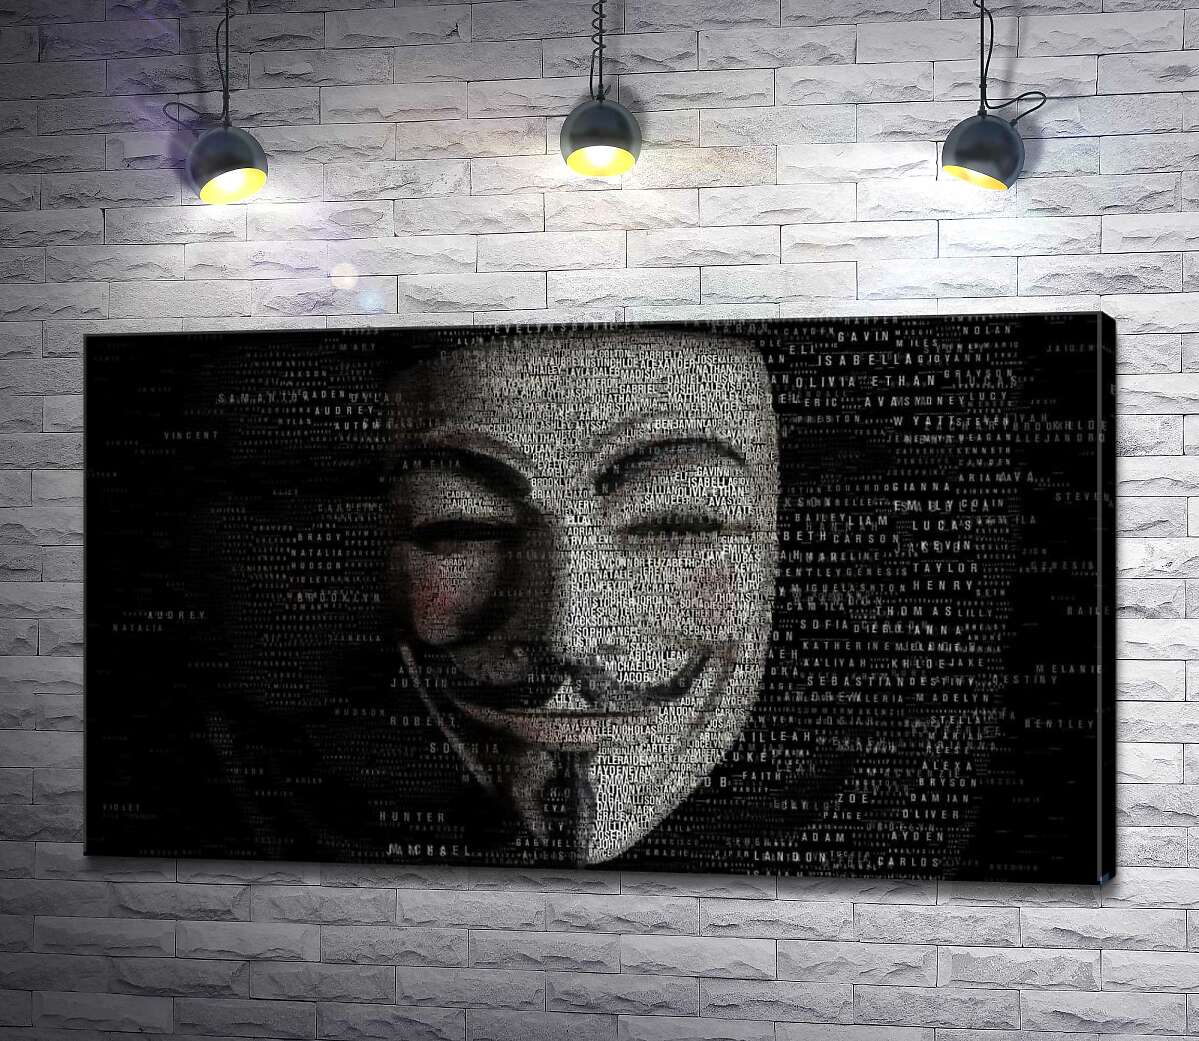 картина Зловісна маска на постері до фільму "Ім'я нам легіон" (We Are Legion: The Story of the Hacktivists)